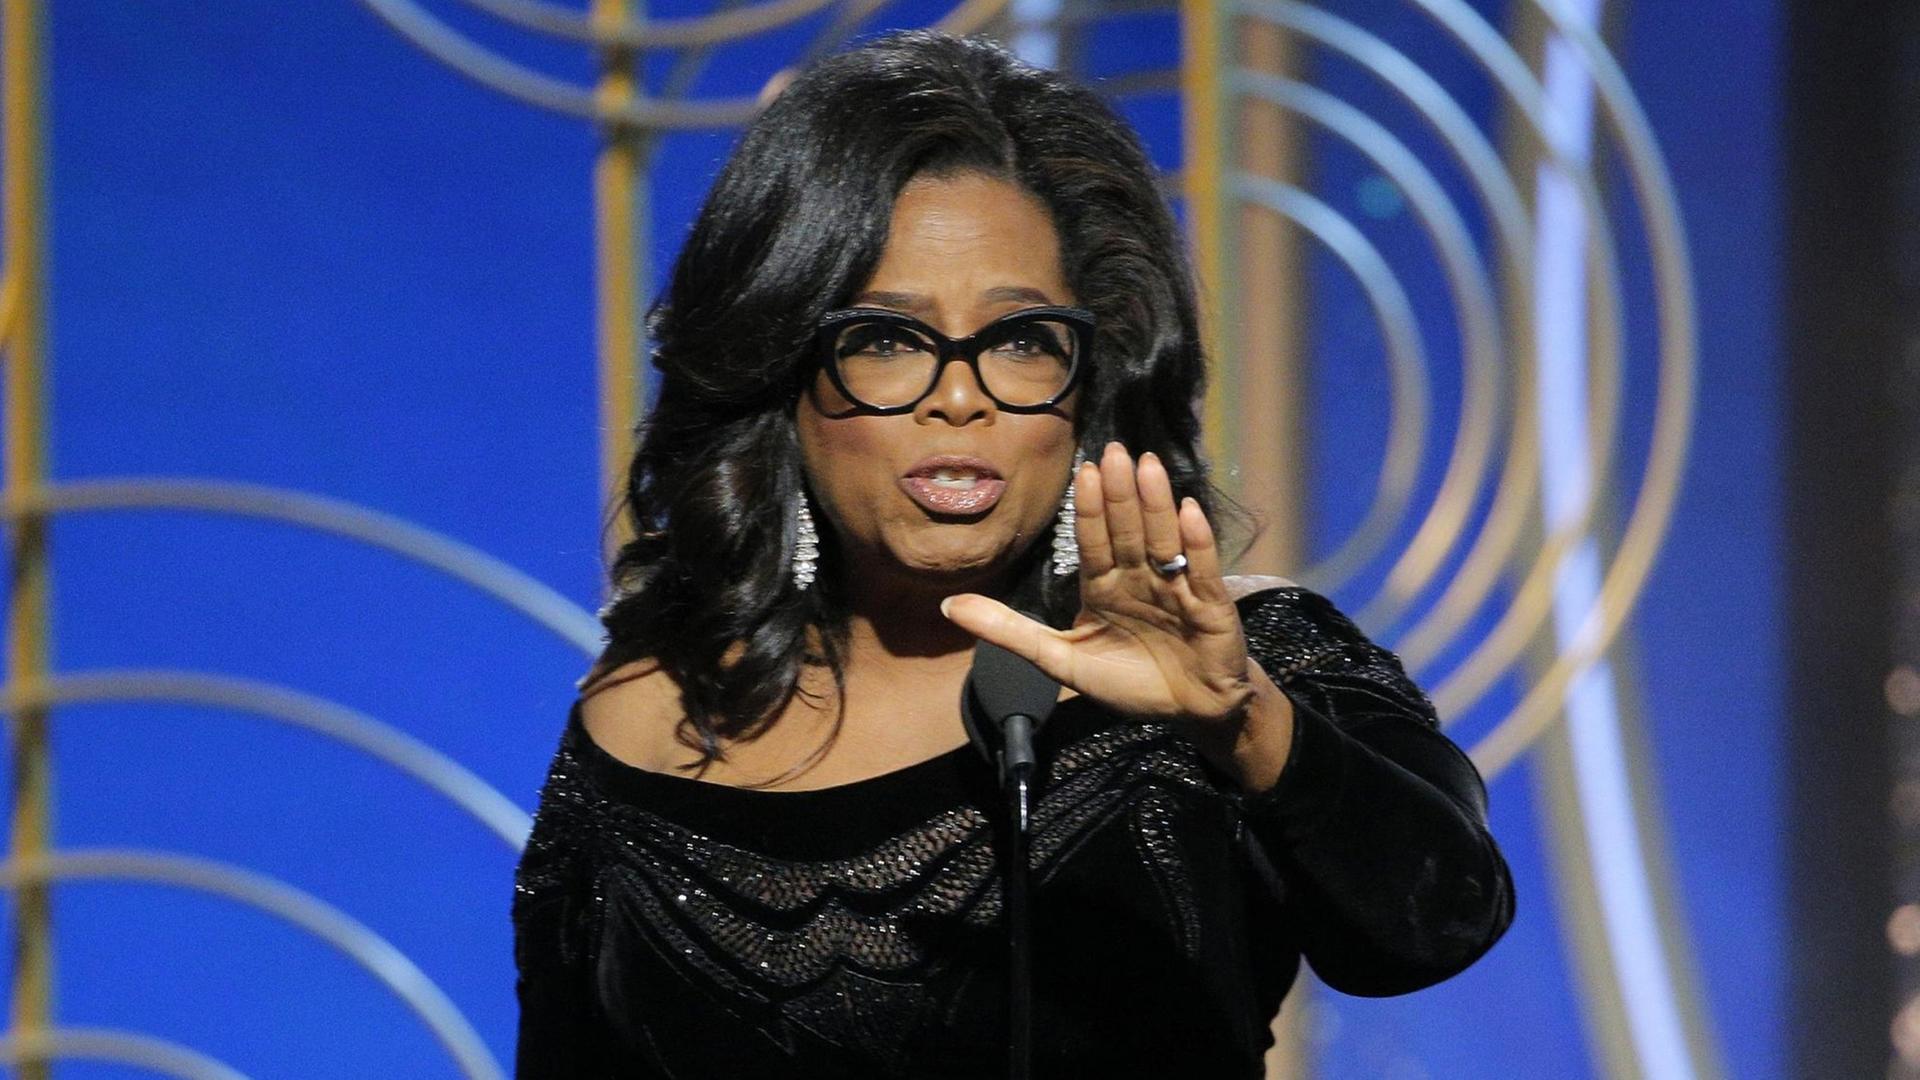 Oprah Winfrey hält bei der Golden-Globes-Verleihung eine bewegende Rede (7. Januar 2018).